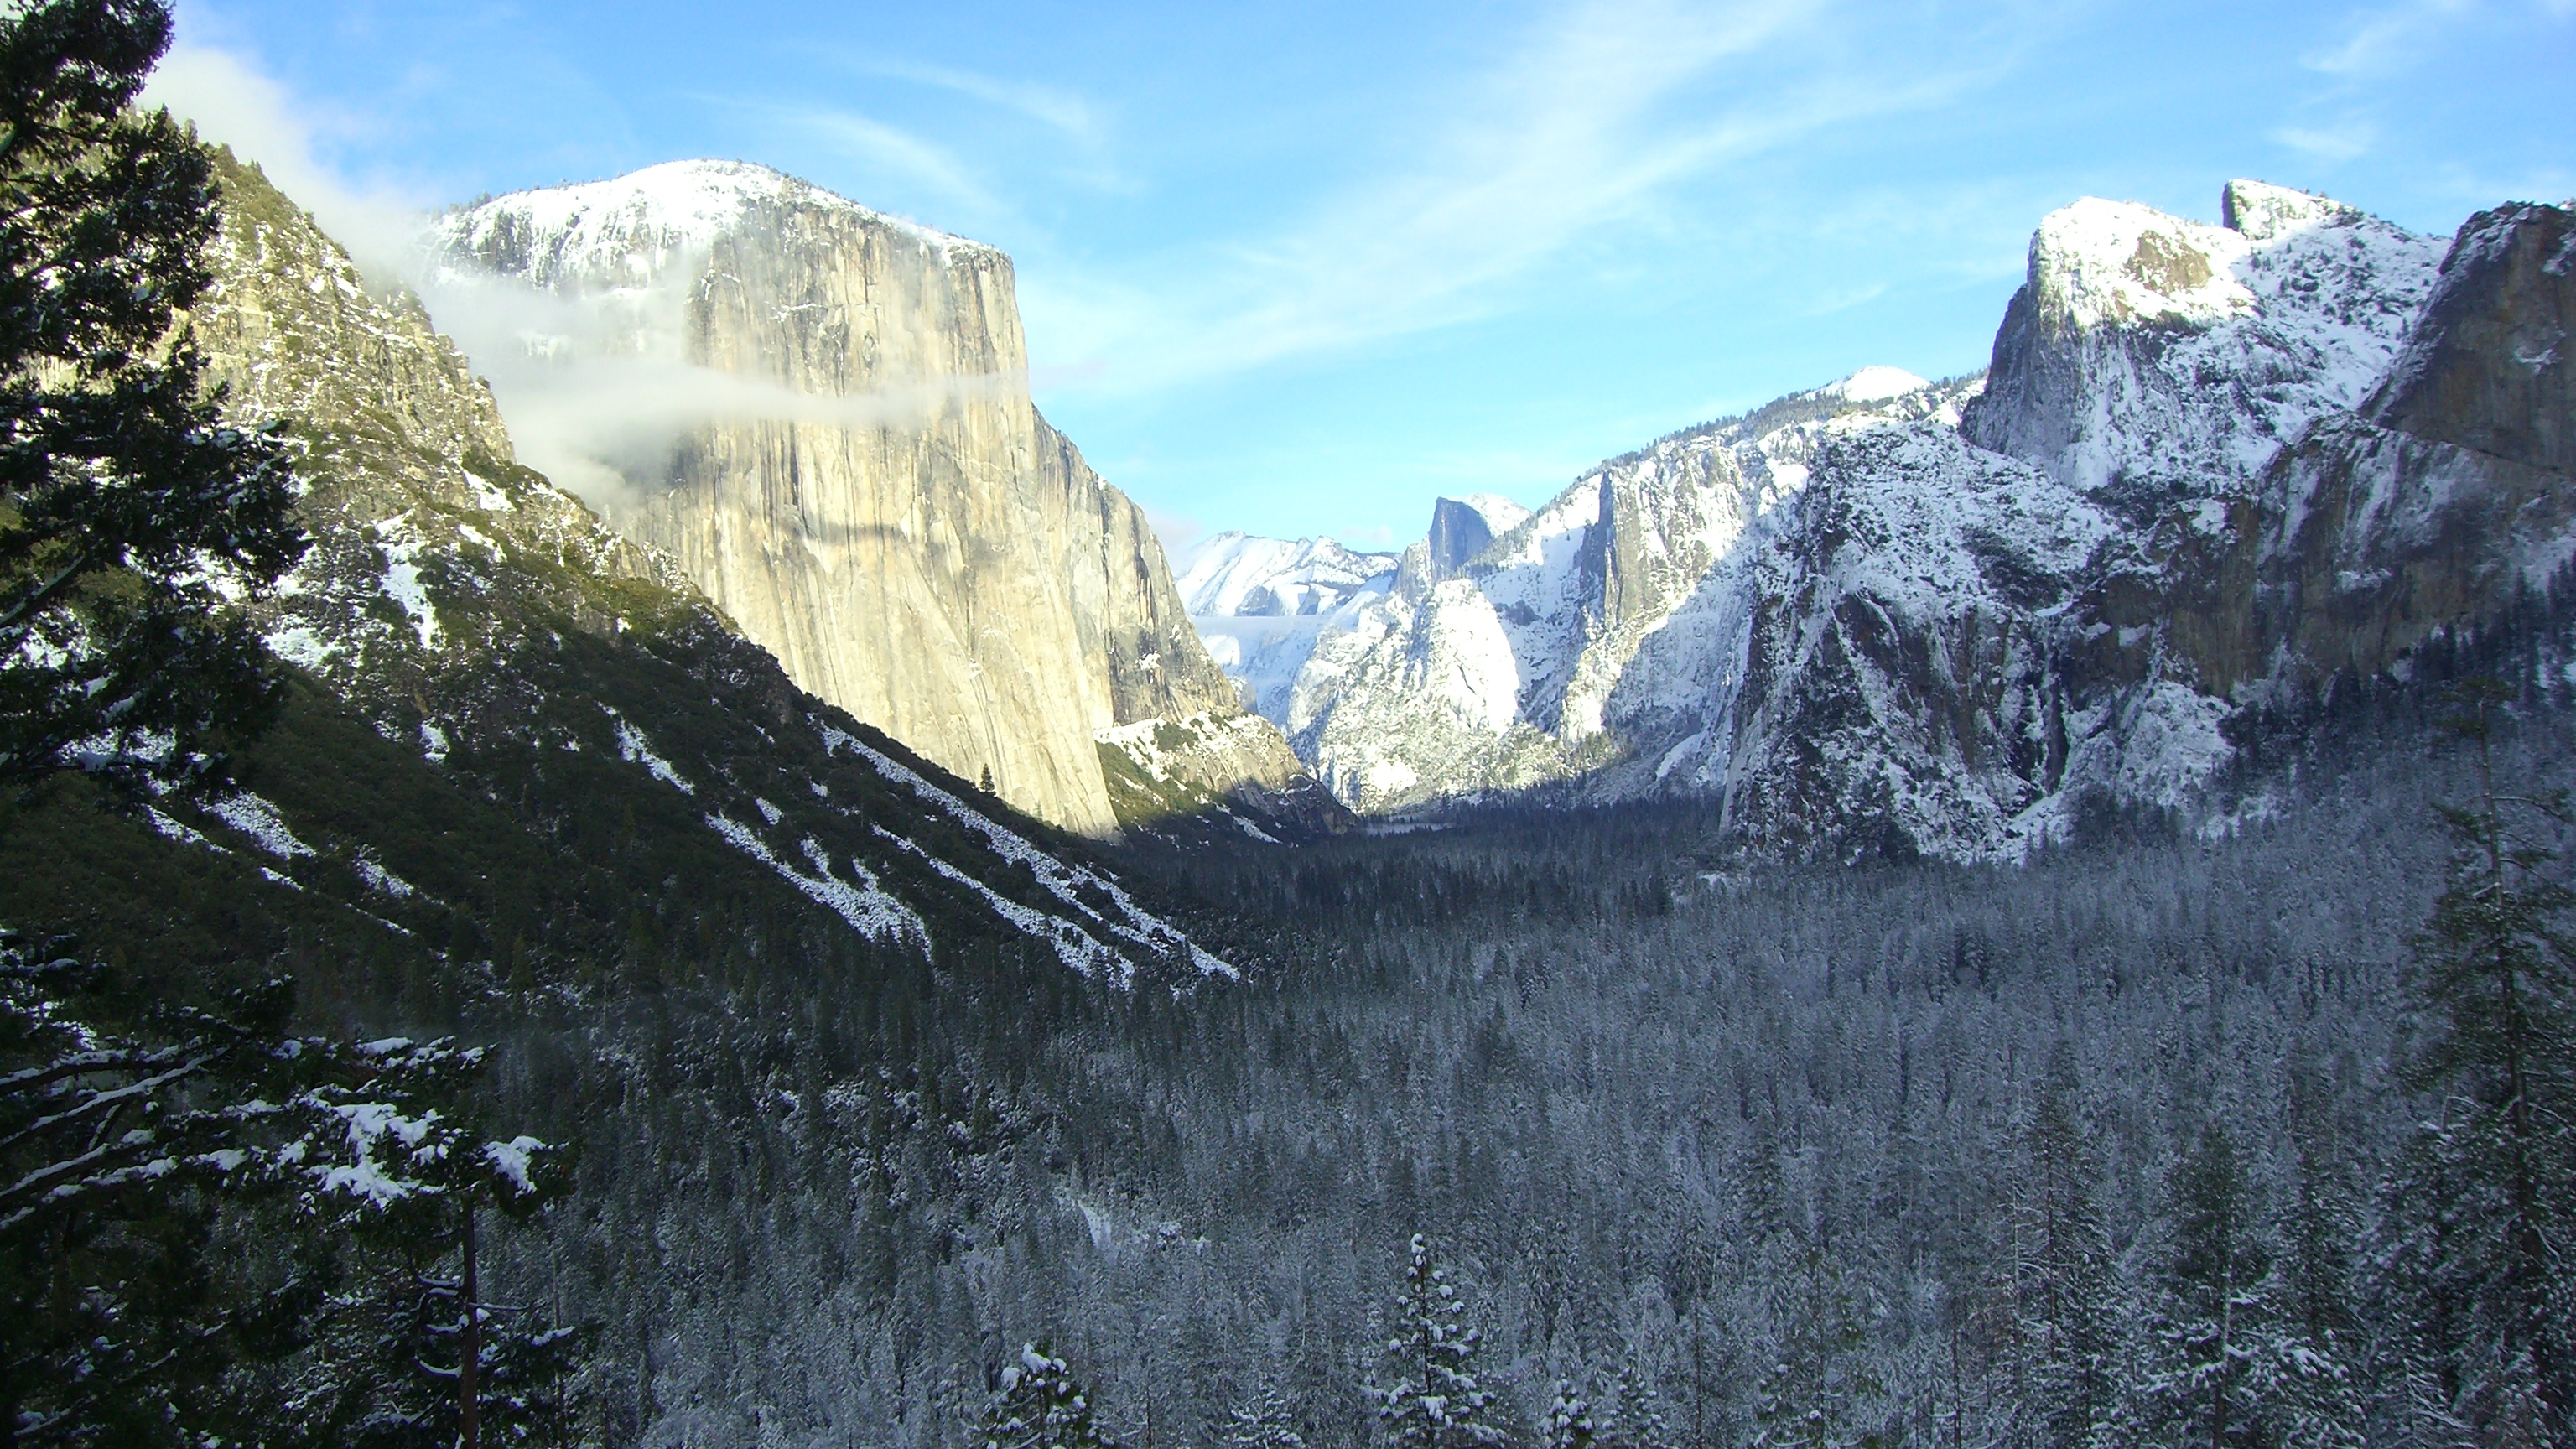 El Capitan - Yosemite National Park, Yosemite Valley - HD Wallpaper 